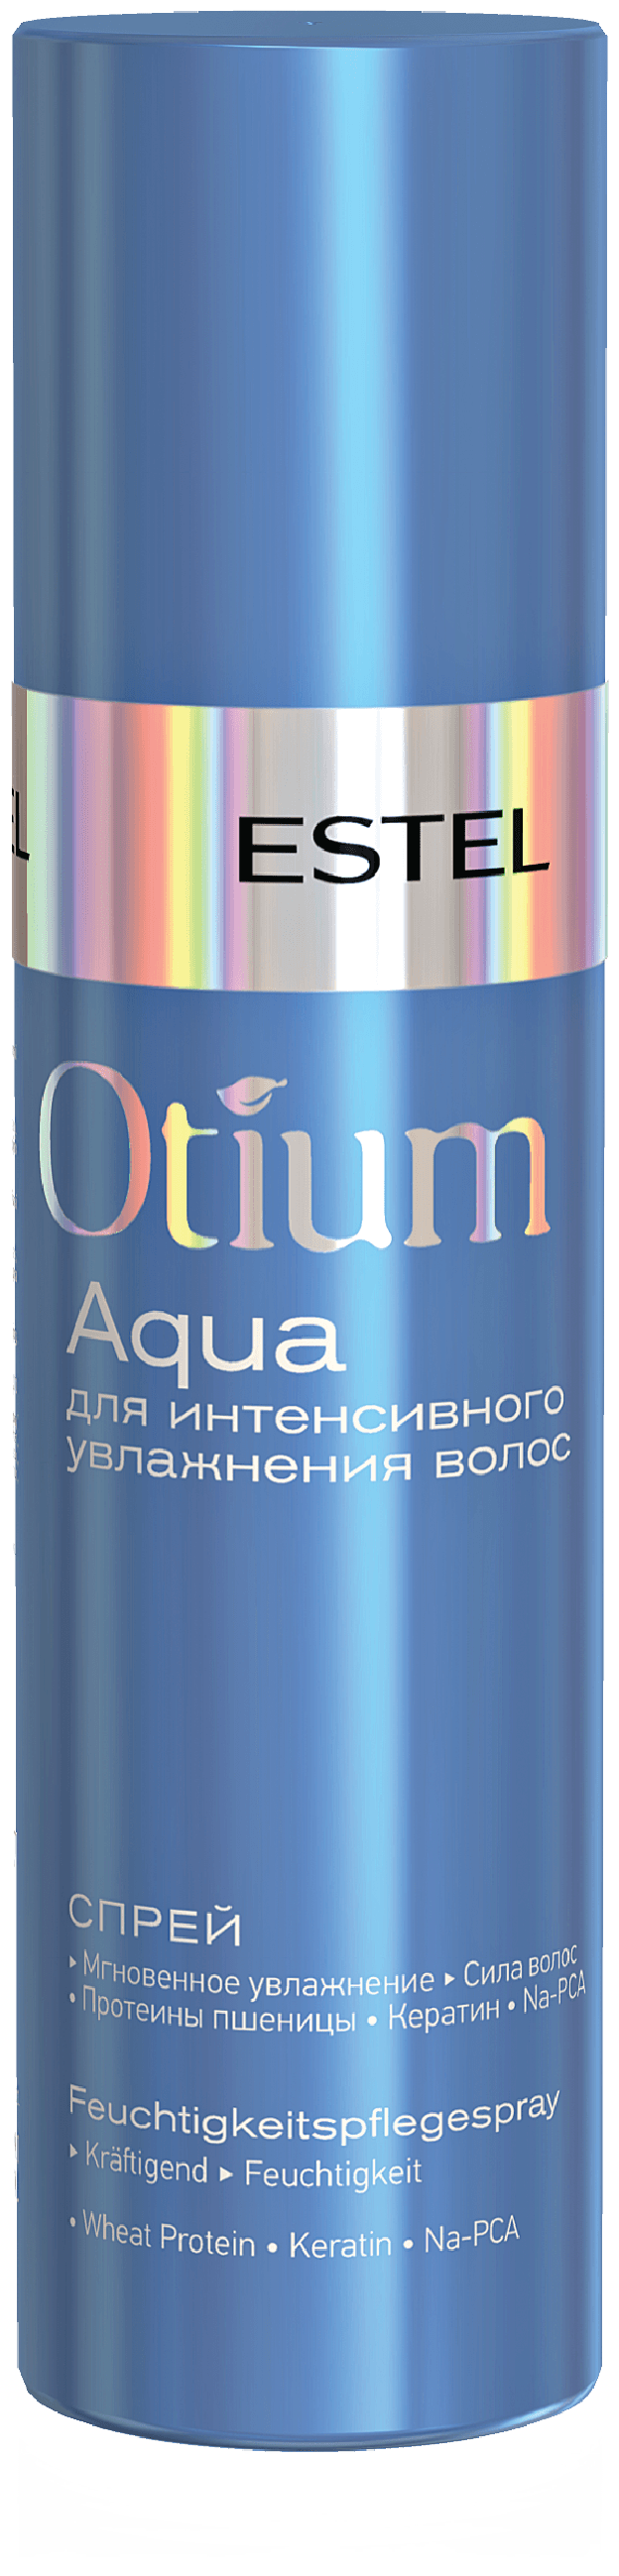 Спрей ESTEL для интенсивного увлажнения волос Otium Aqua, 200 мл